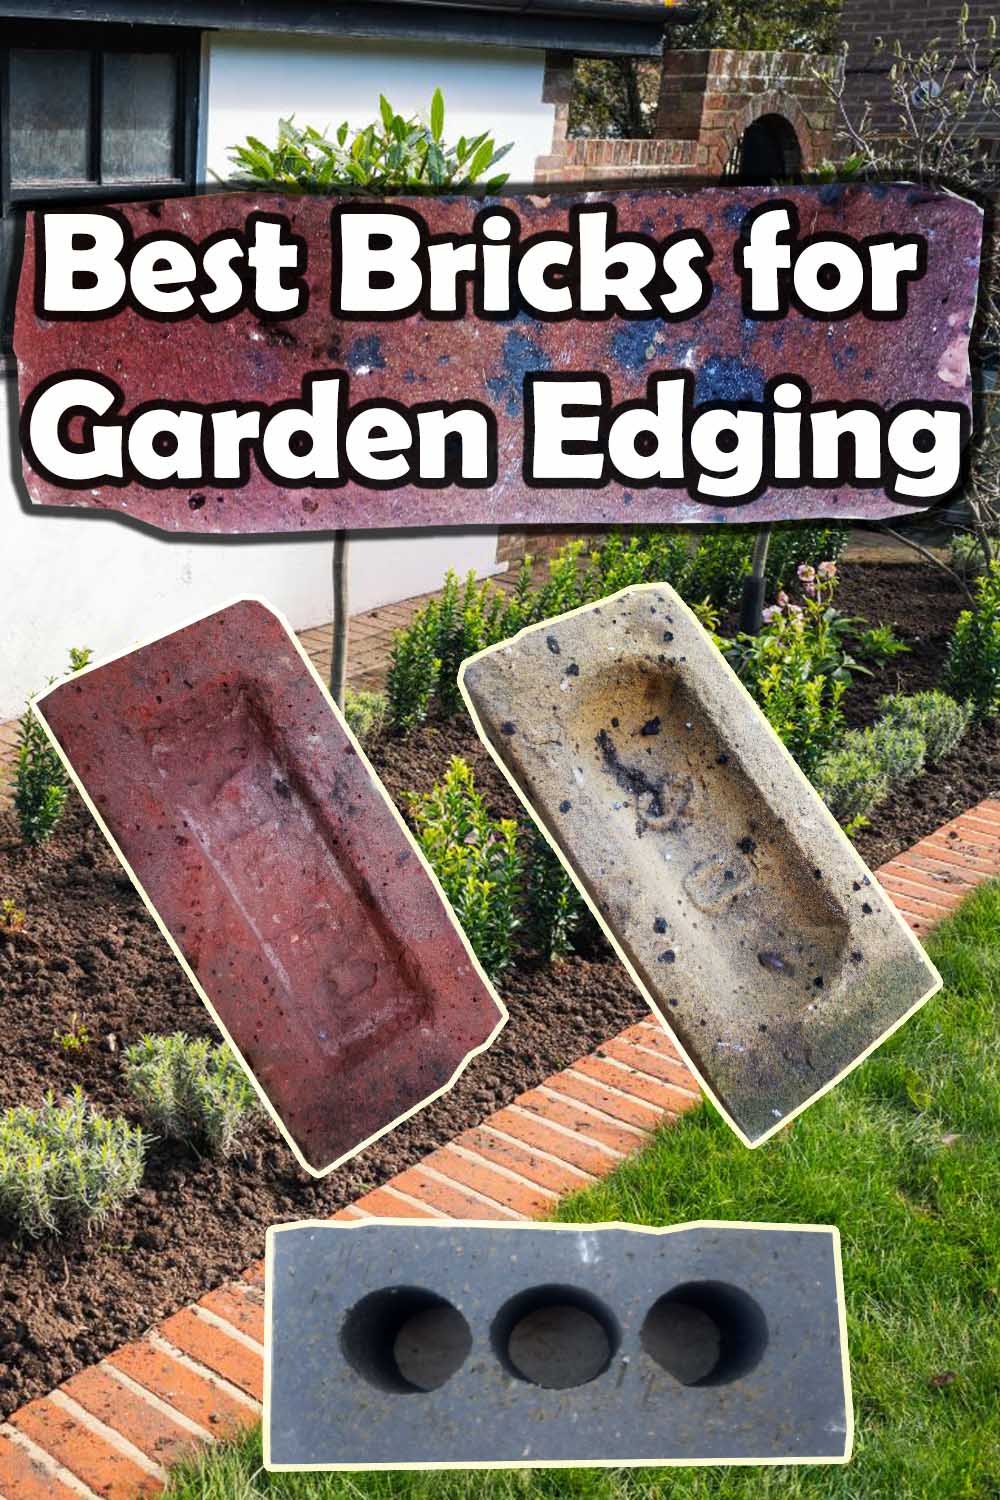 Garden edging bricks